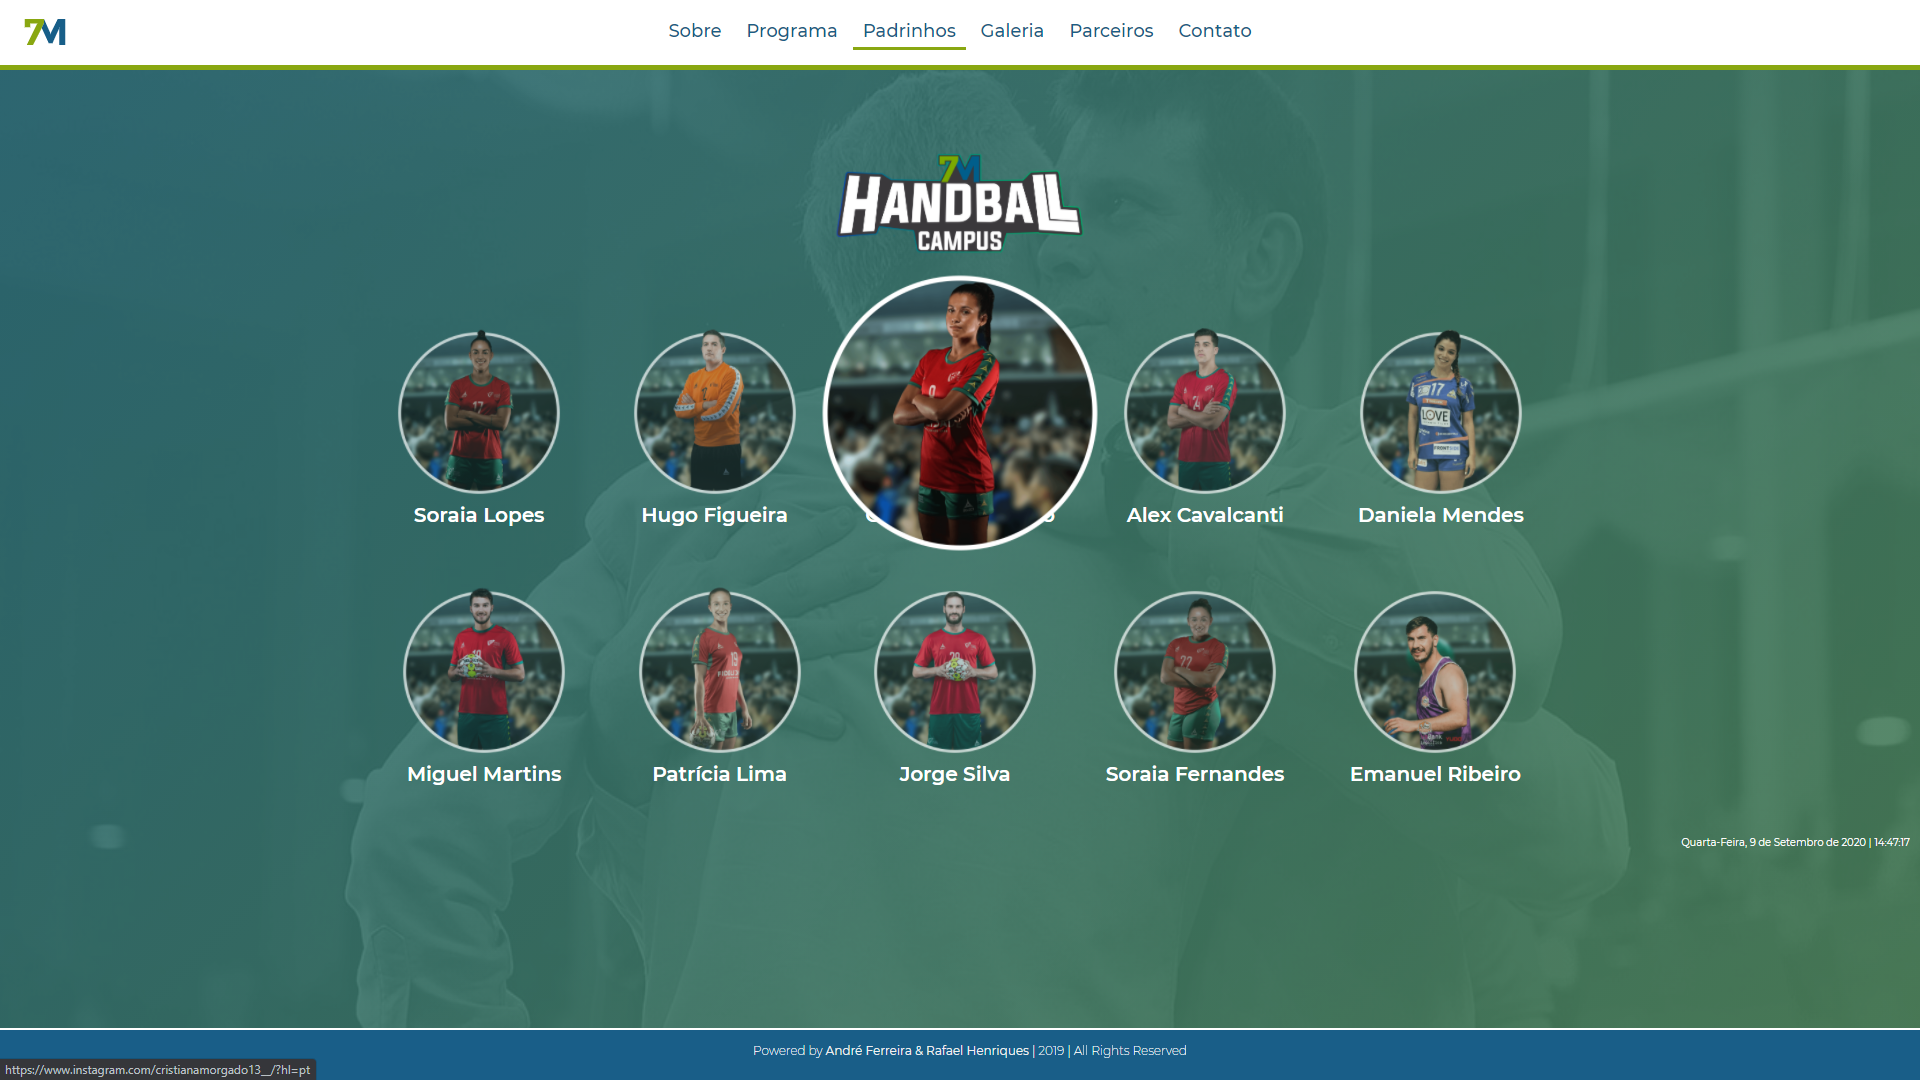 7M_Handball_Campus_3